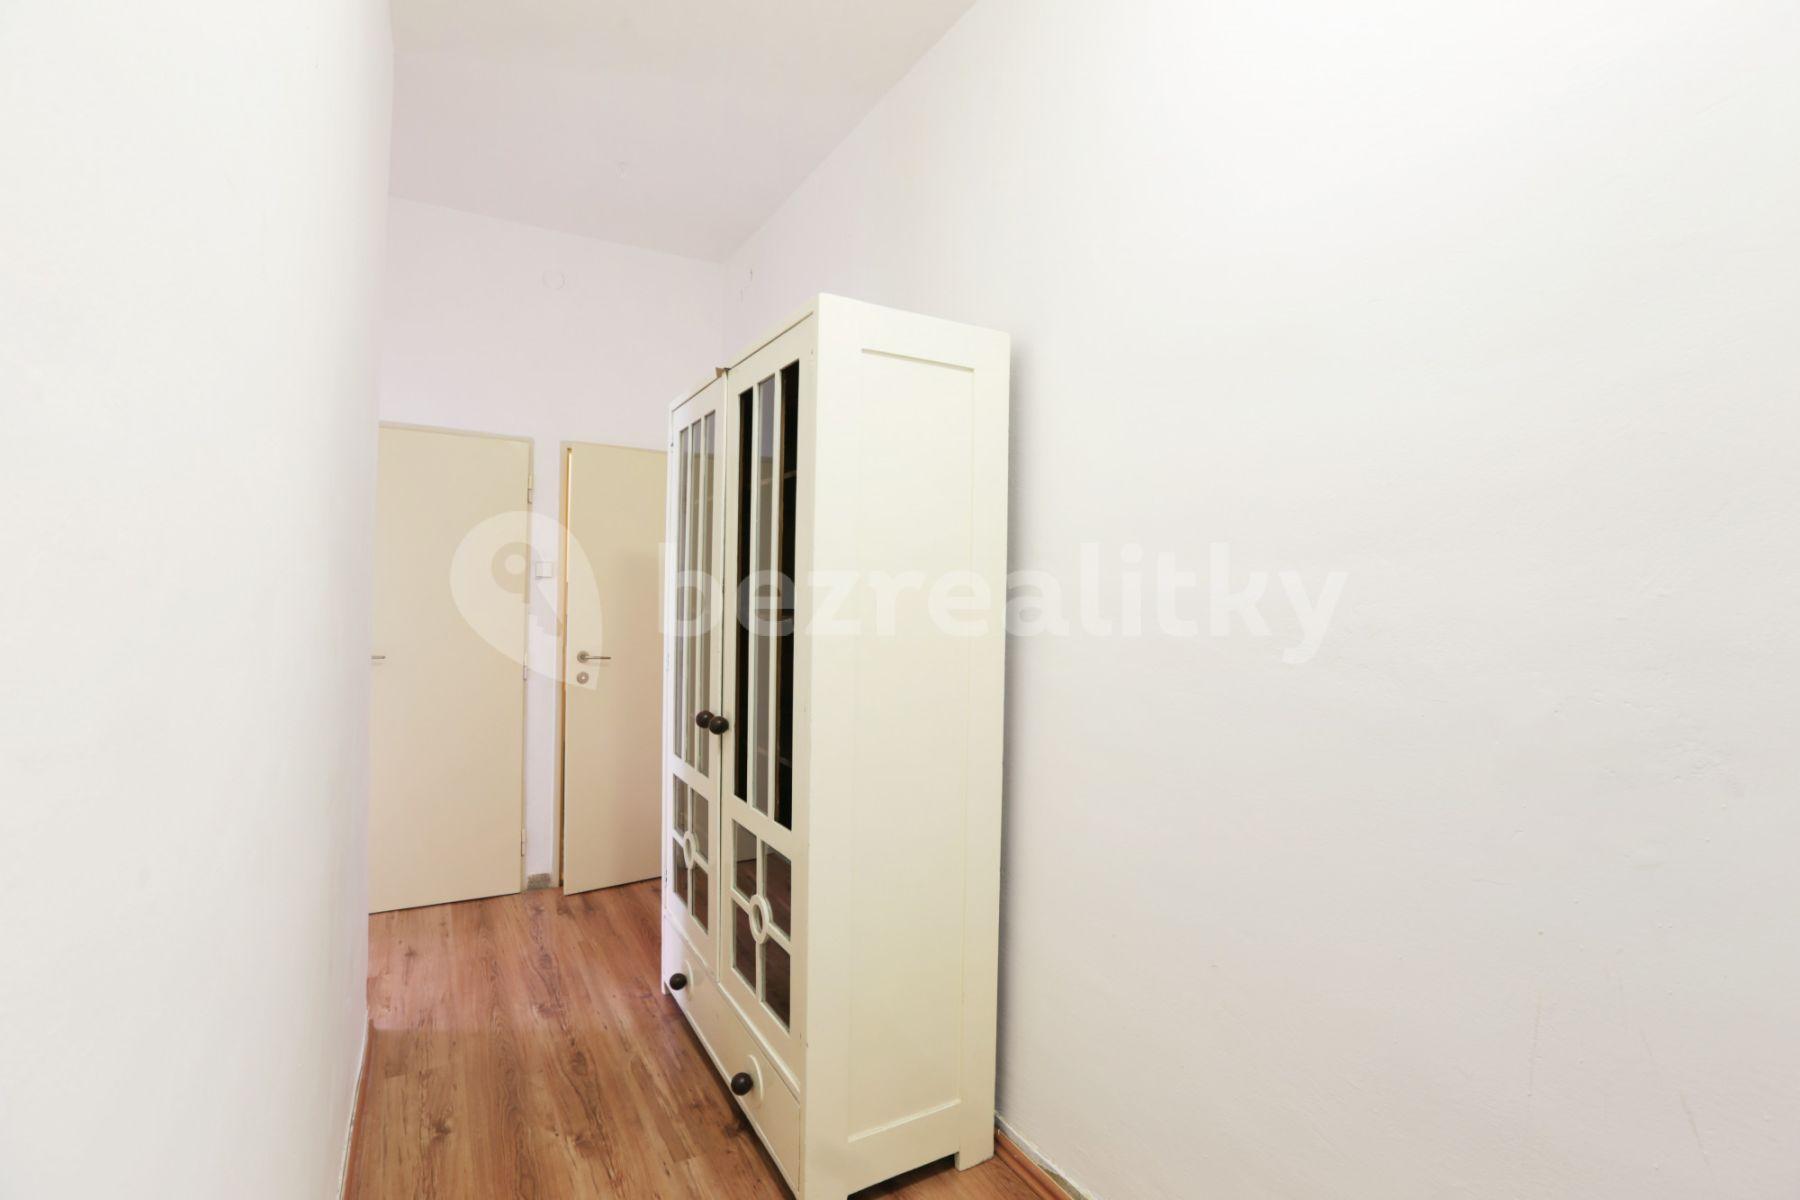 2 bedroom flat to rent, 57 m², Chaloupeckého náměstí, Brno, Jihomoravský Region